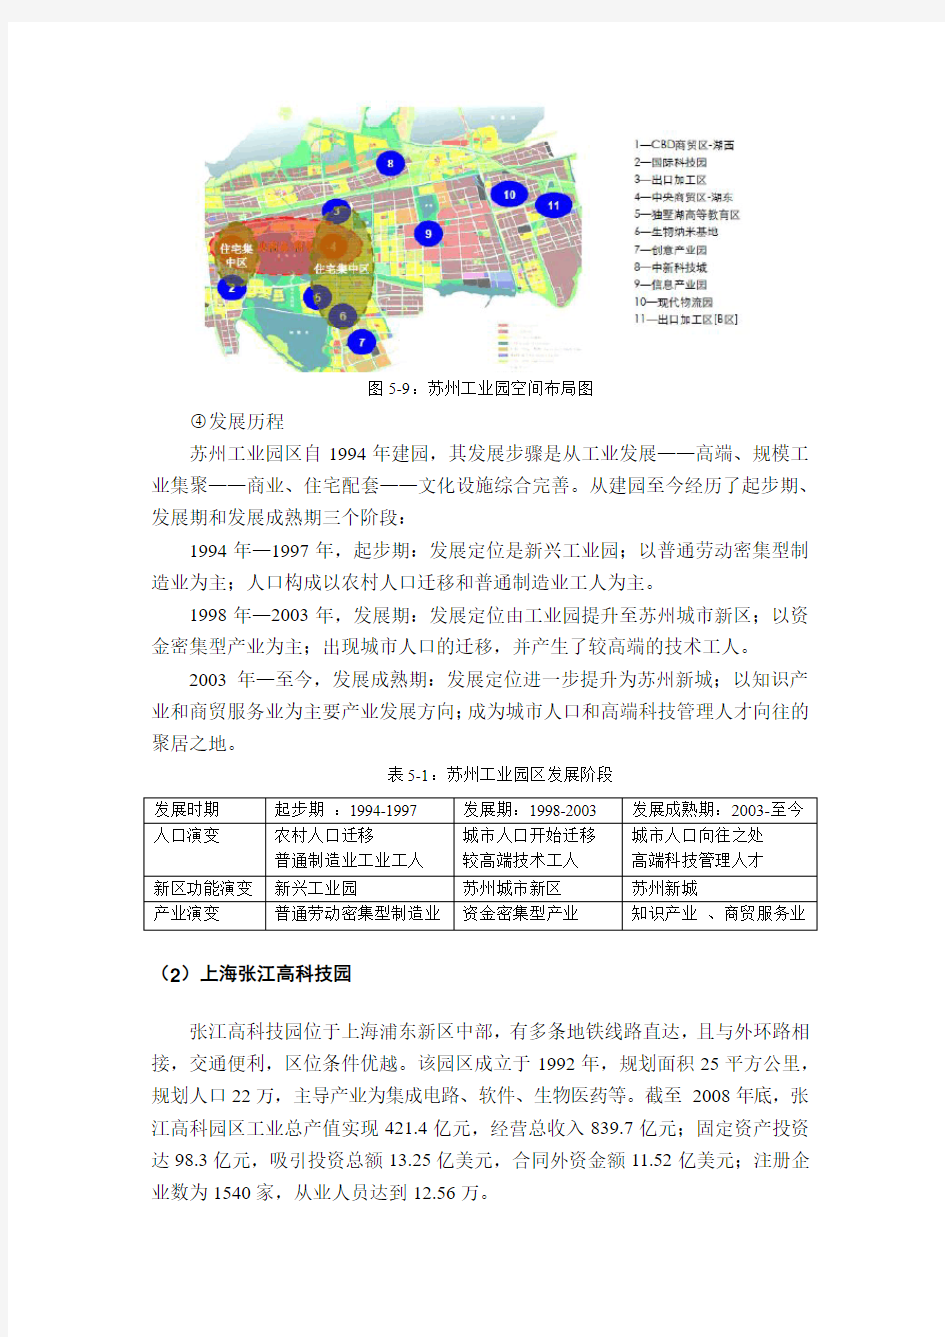 苏州工业园和张江高科园案例分析